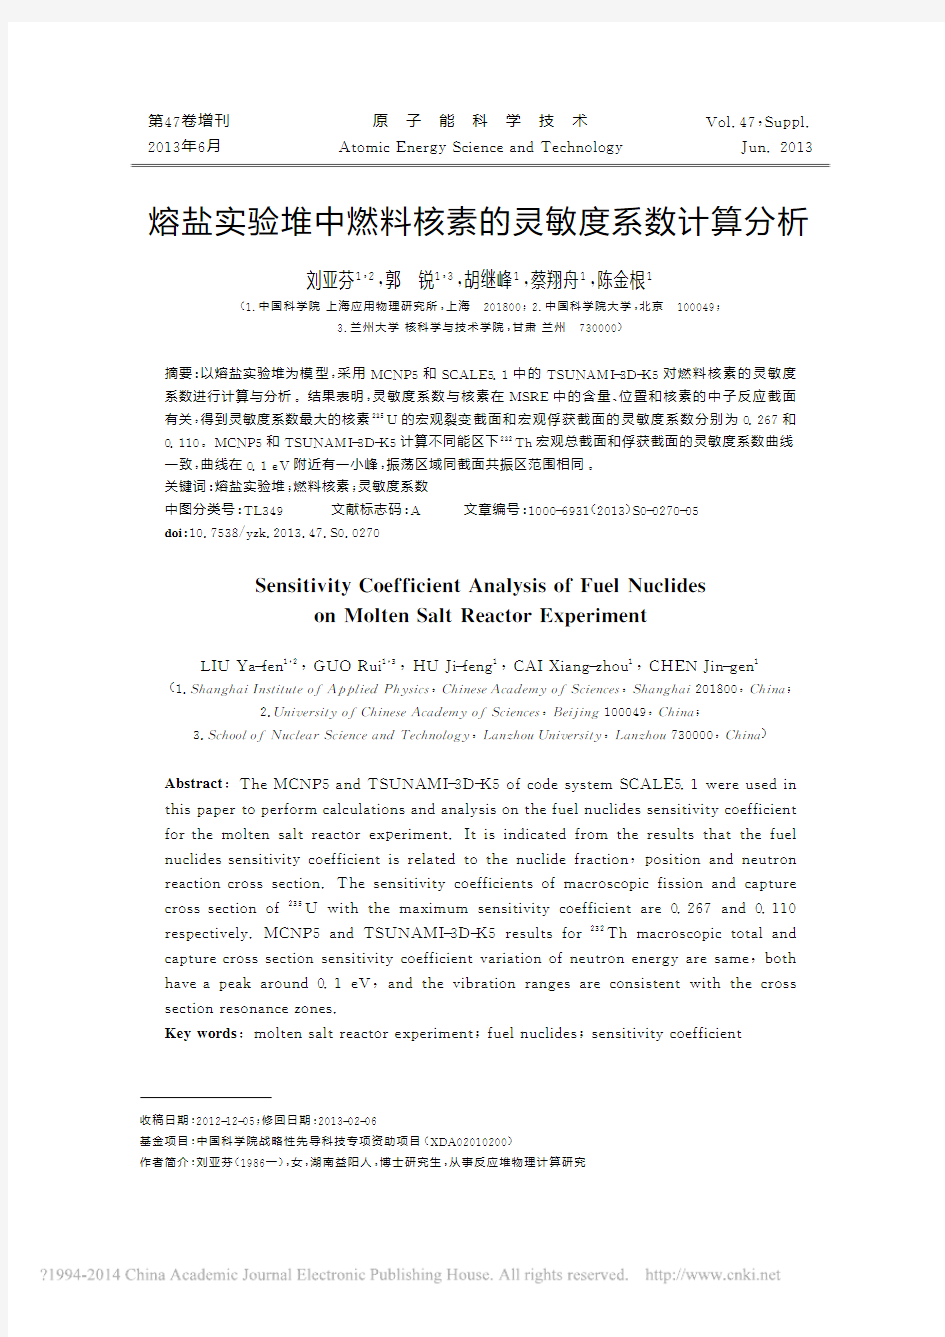 熔盐实验堆中燃料核素的灵敏度系数计算分析_刘亚芬 (1)